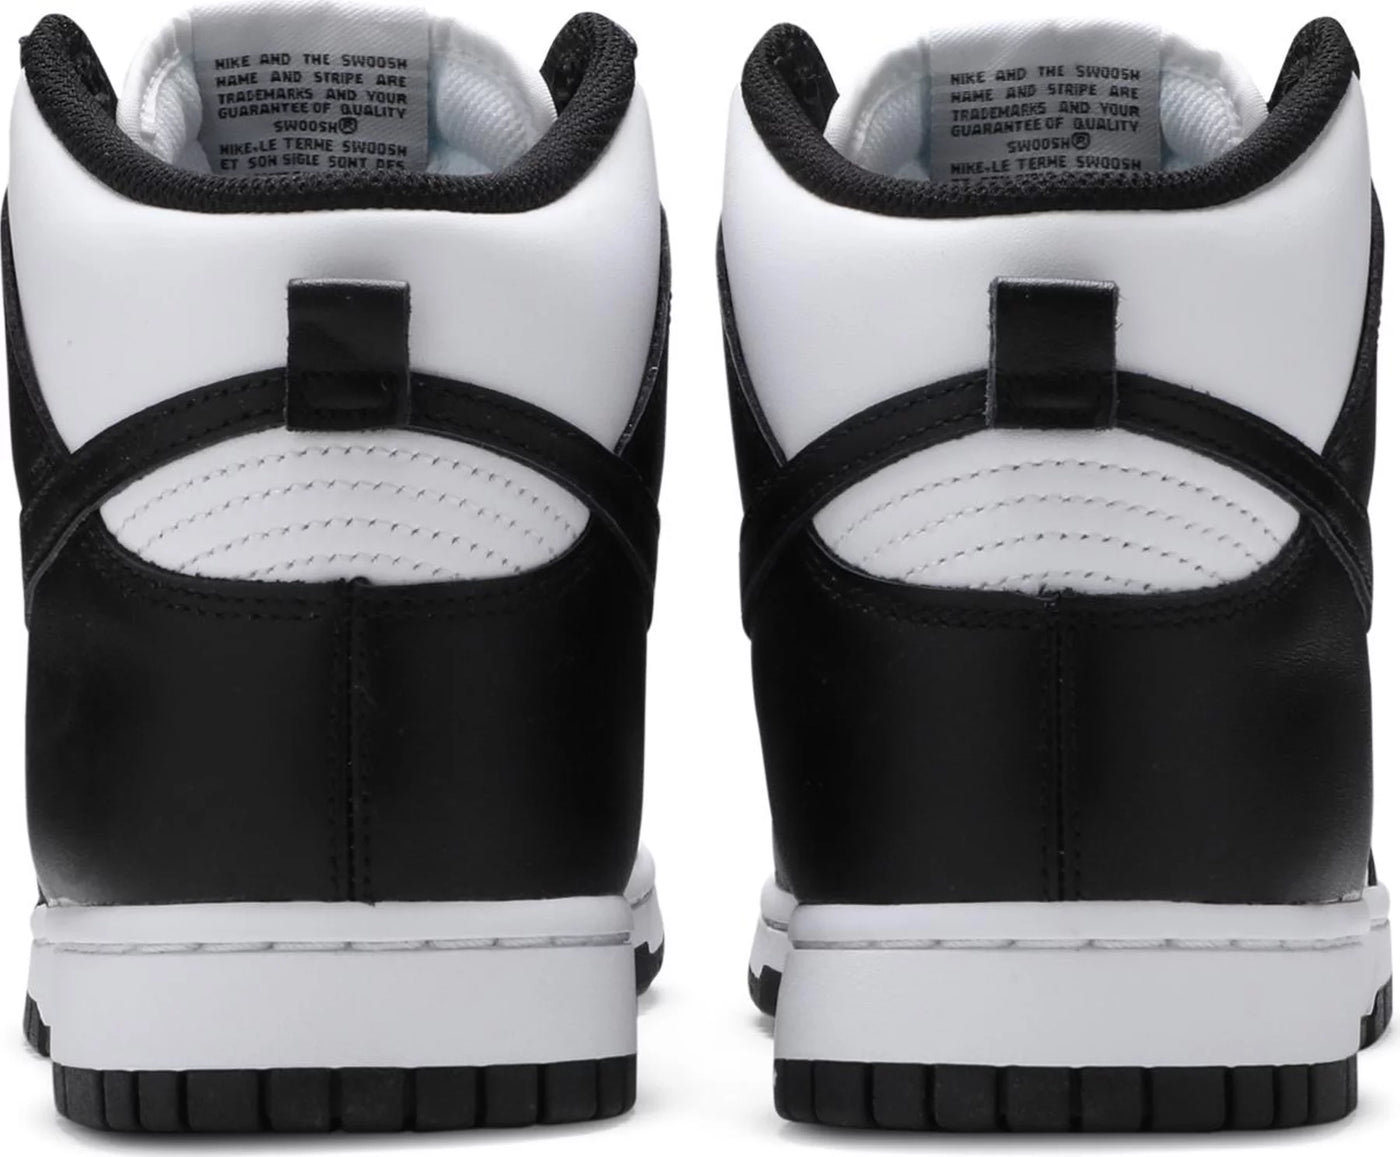 Nike Dunk High Black and White/Panda W